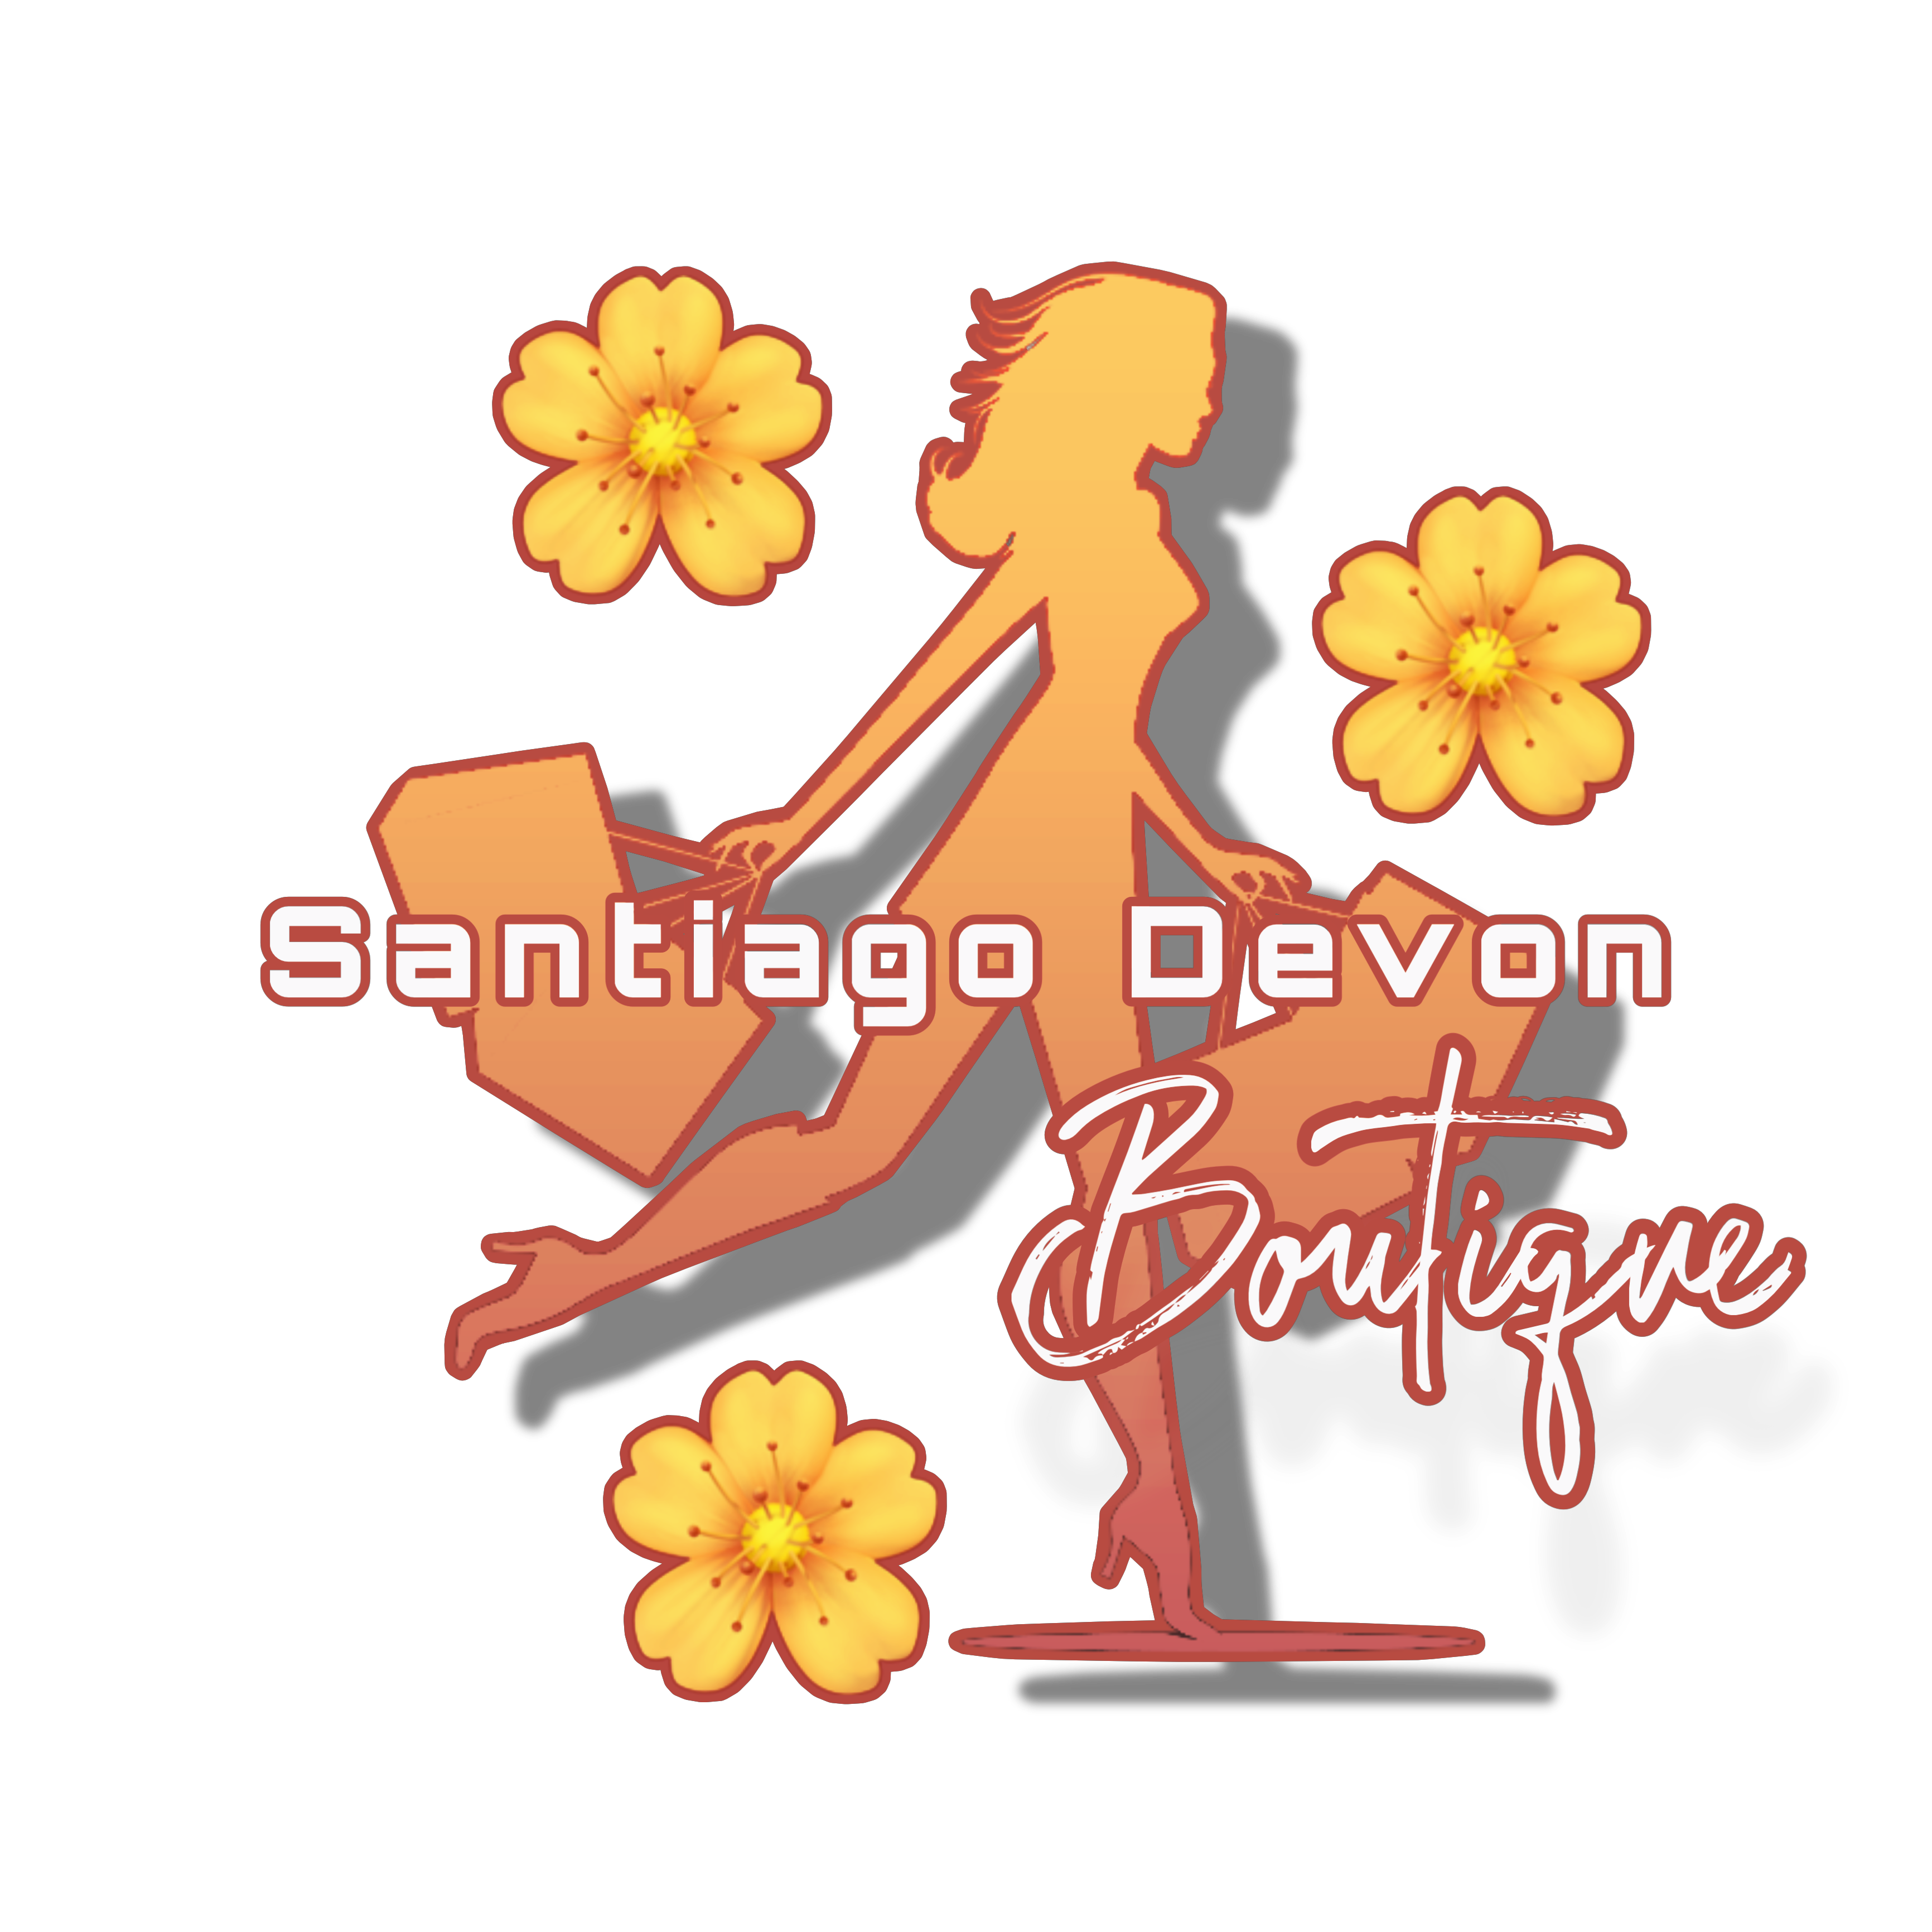 Santiago Devon Boutique